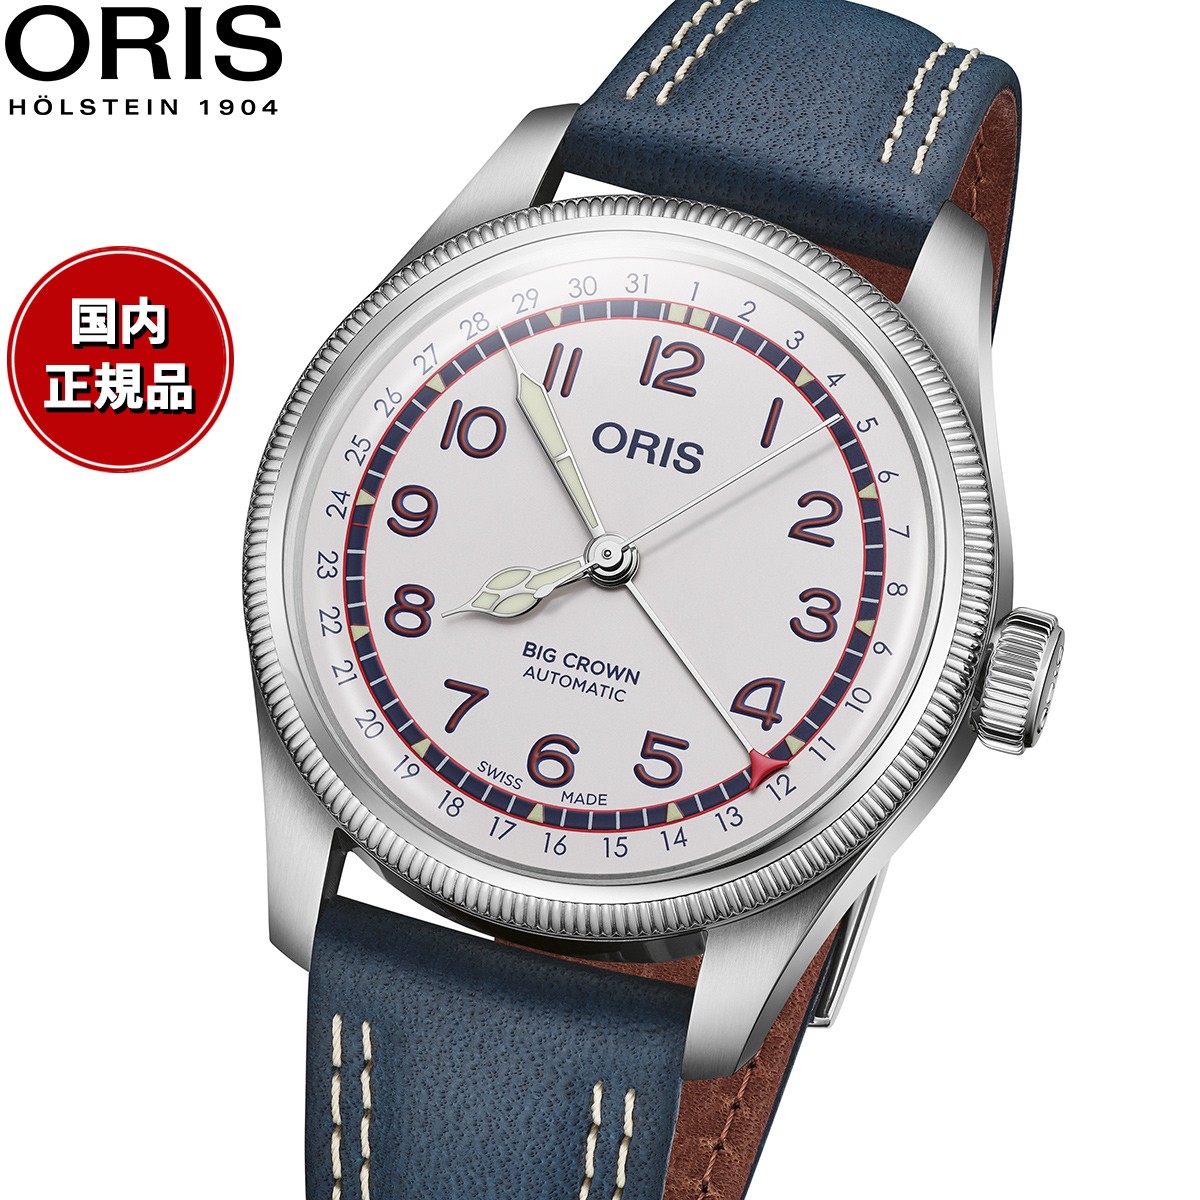 オリス ORIS ビッグクラウン ポインターデイト ハンク・アーロン リミテッドエディション 限定モデル BIG CROWN 腕時計 メンズ 自動巻き 01 754 7785 4081-Set